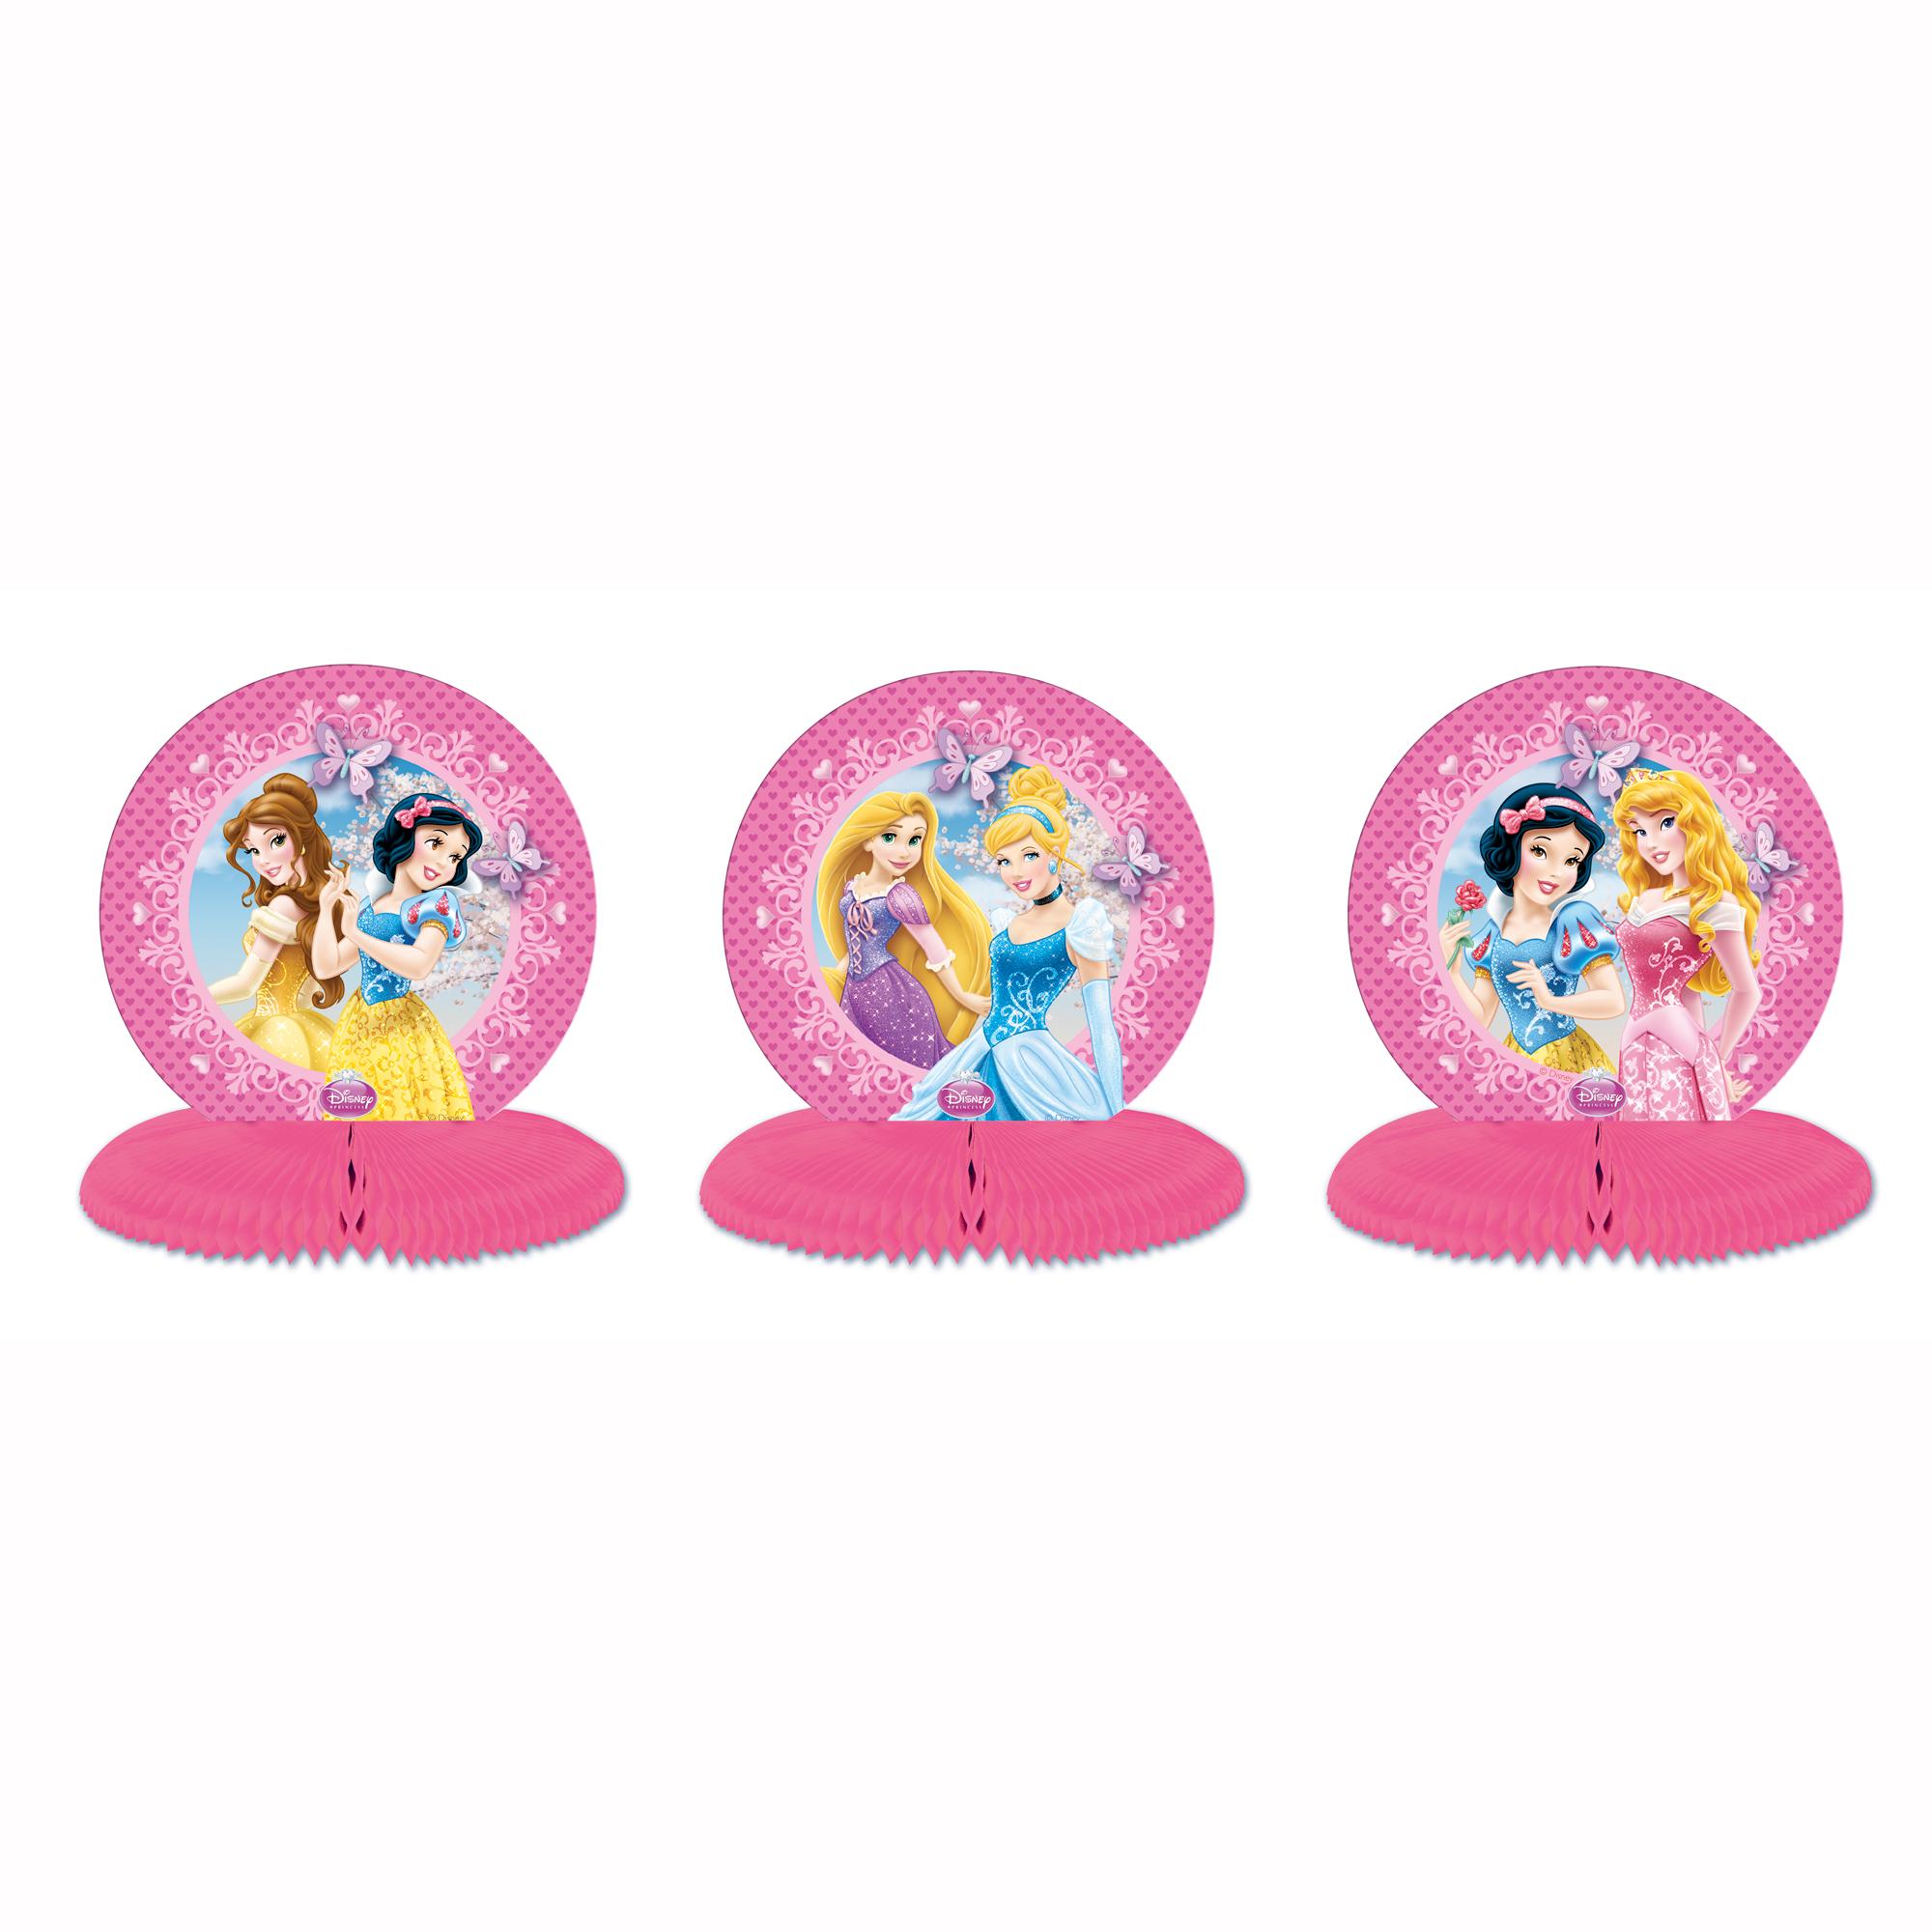 Princess Sparkle Mini Centerpieces 3pcs Decorations - Party Centre